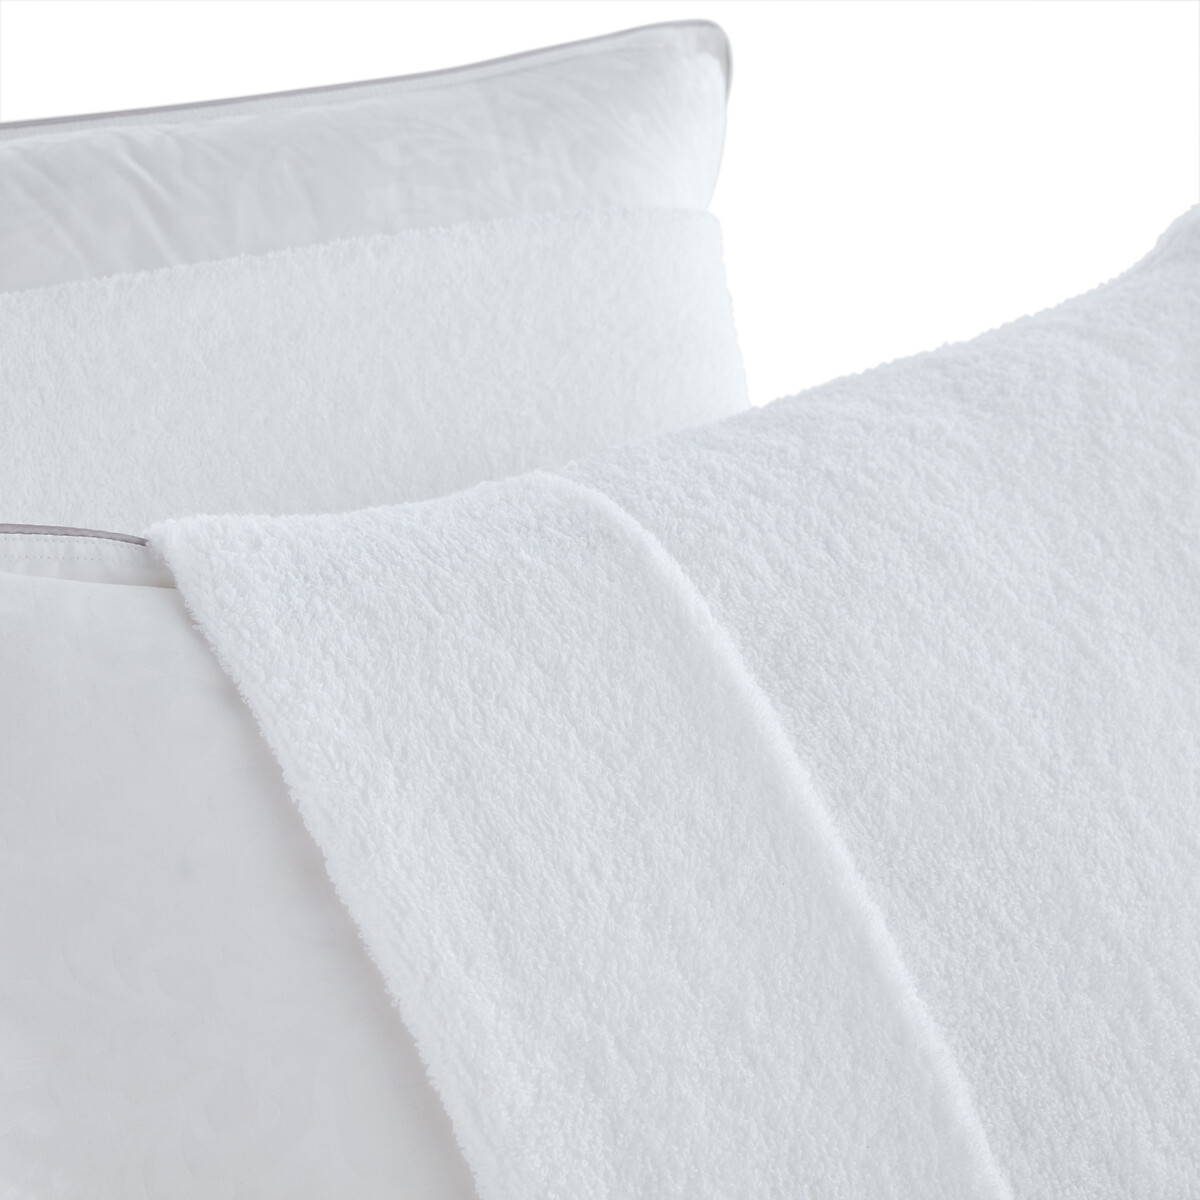 Чехол La Redoute Защитный на подушку из махровой ткани  хлопок 65 x 65 см белый, размер 65 x 65 см - фото 2